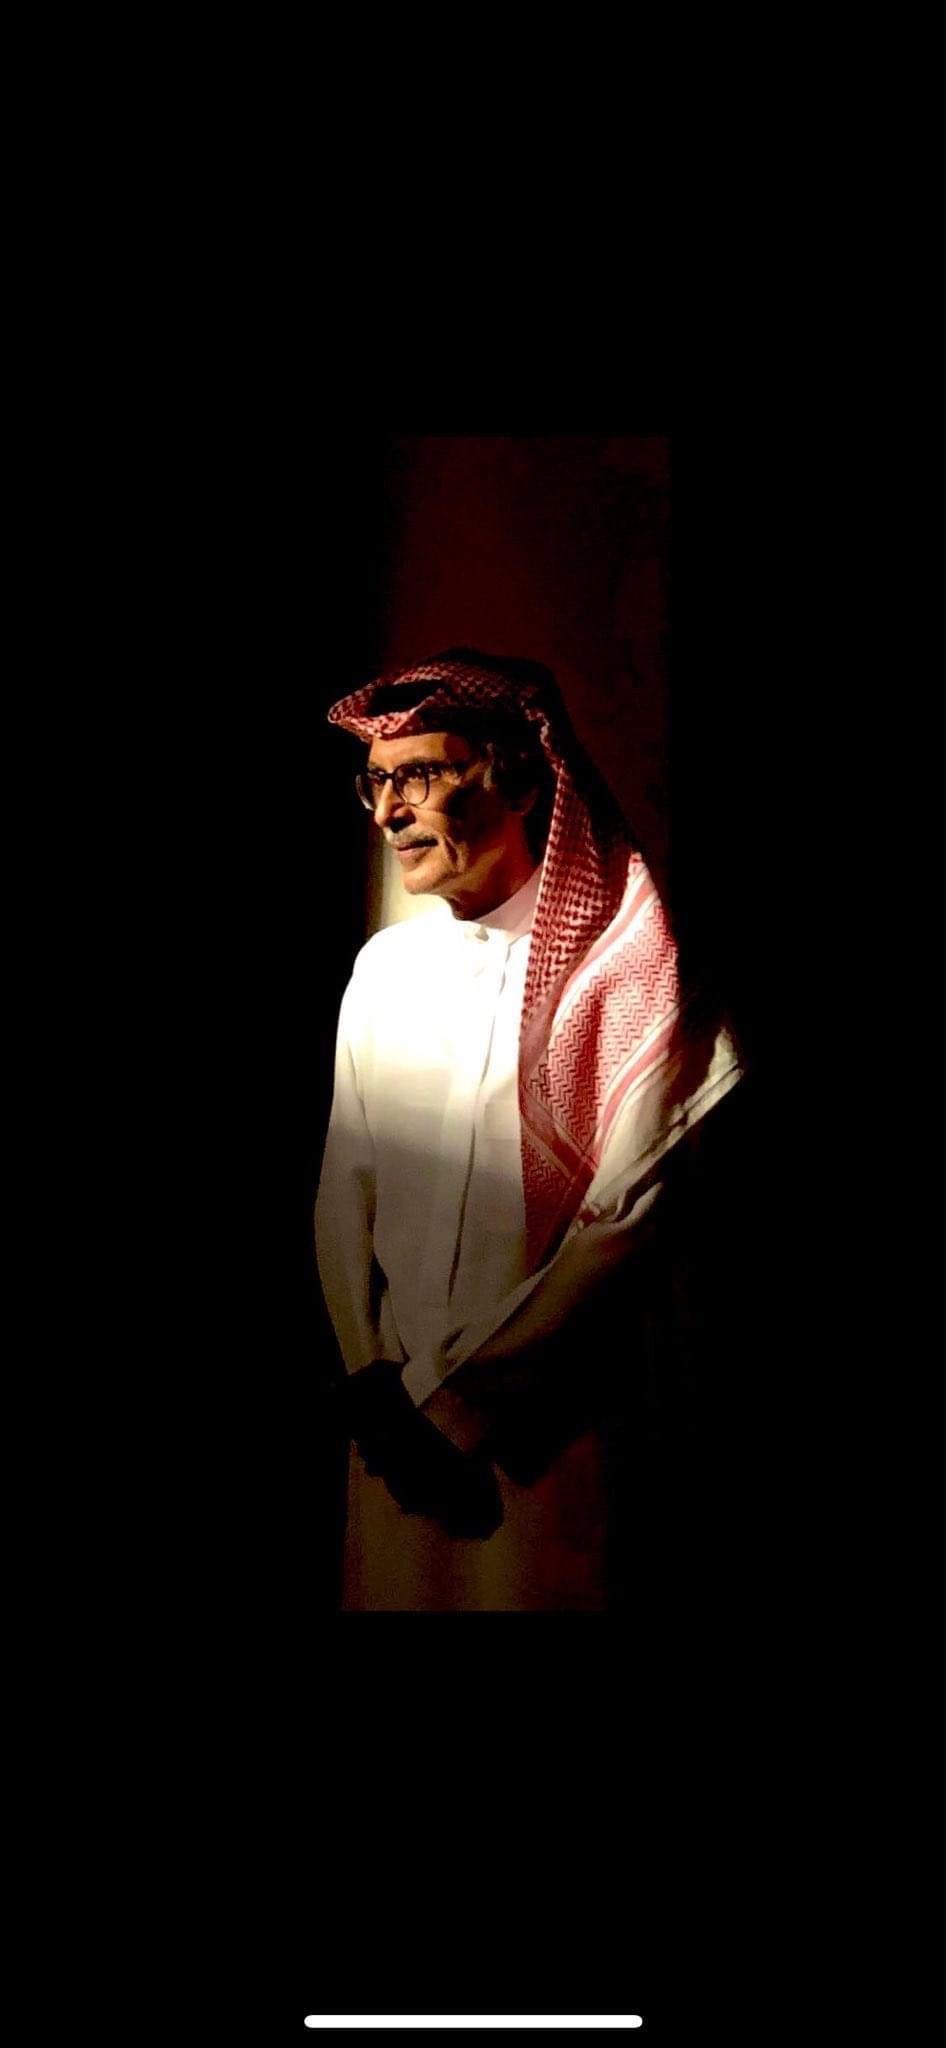 وفاة الامير بدر بن عبدالمحسن أحد أهم شعراء السعودية (صورة)